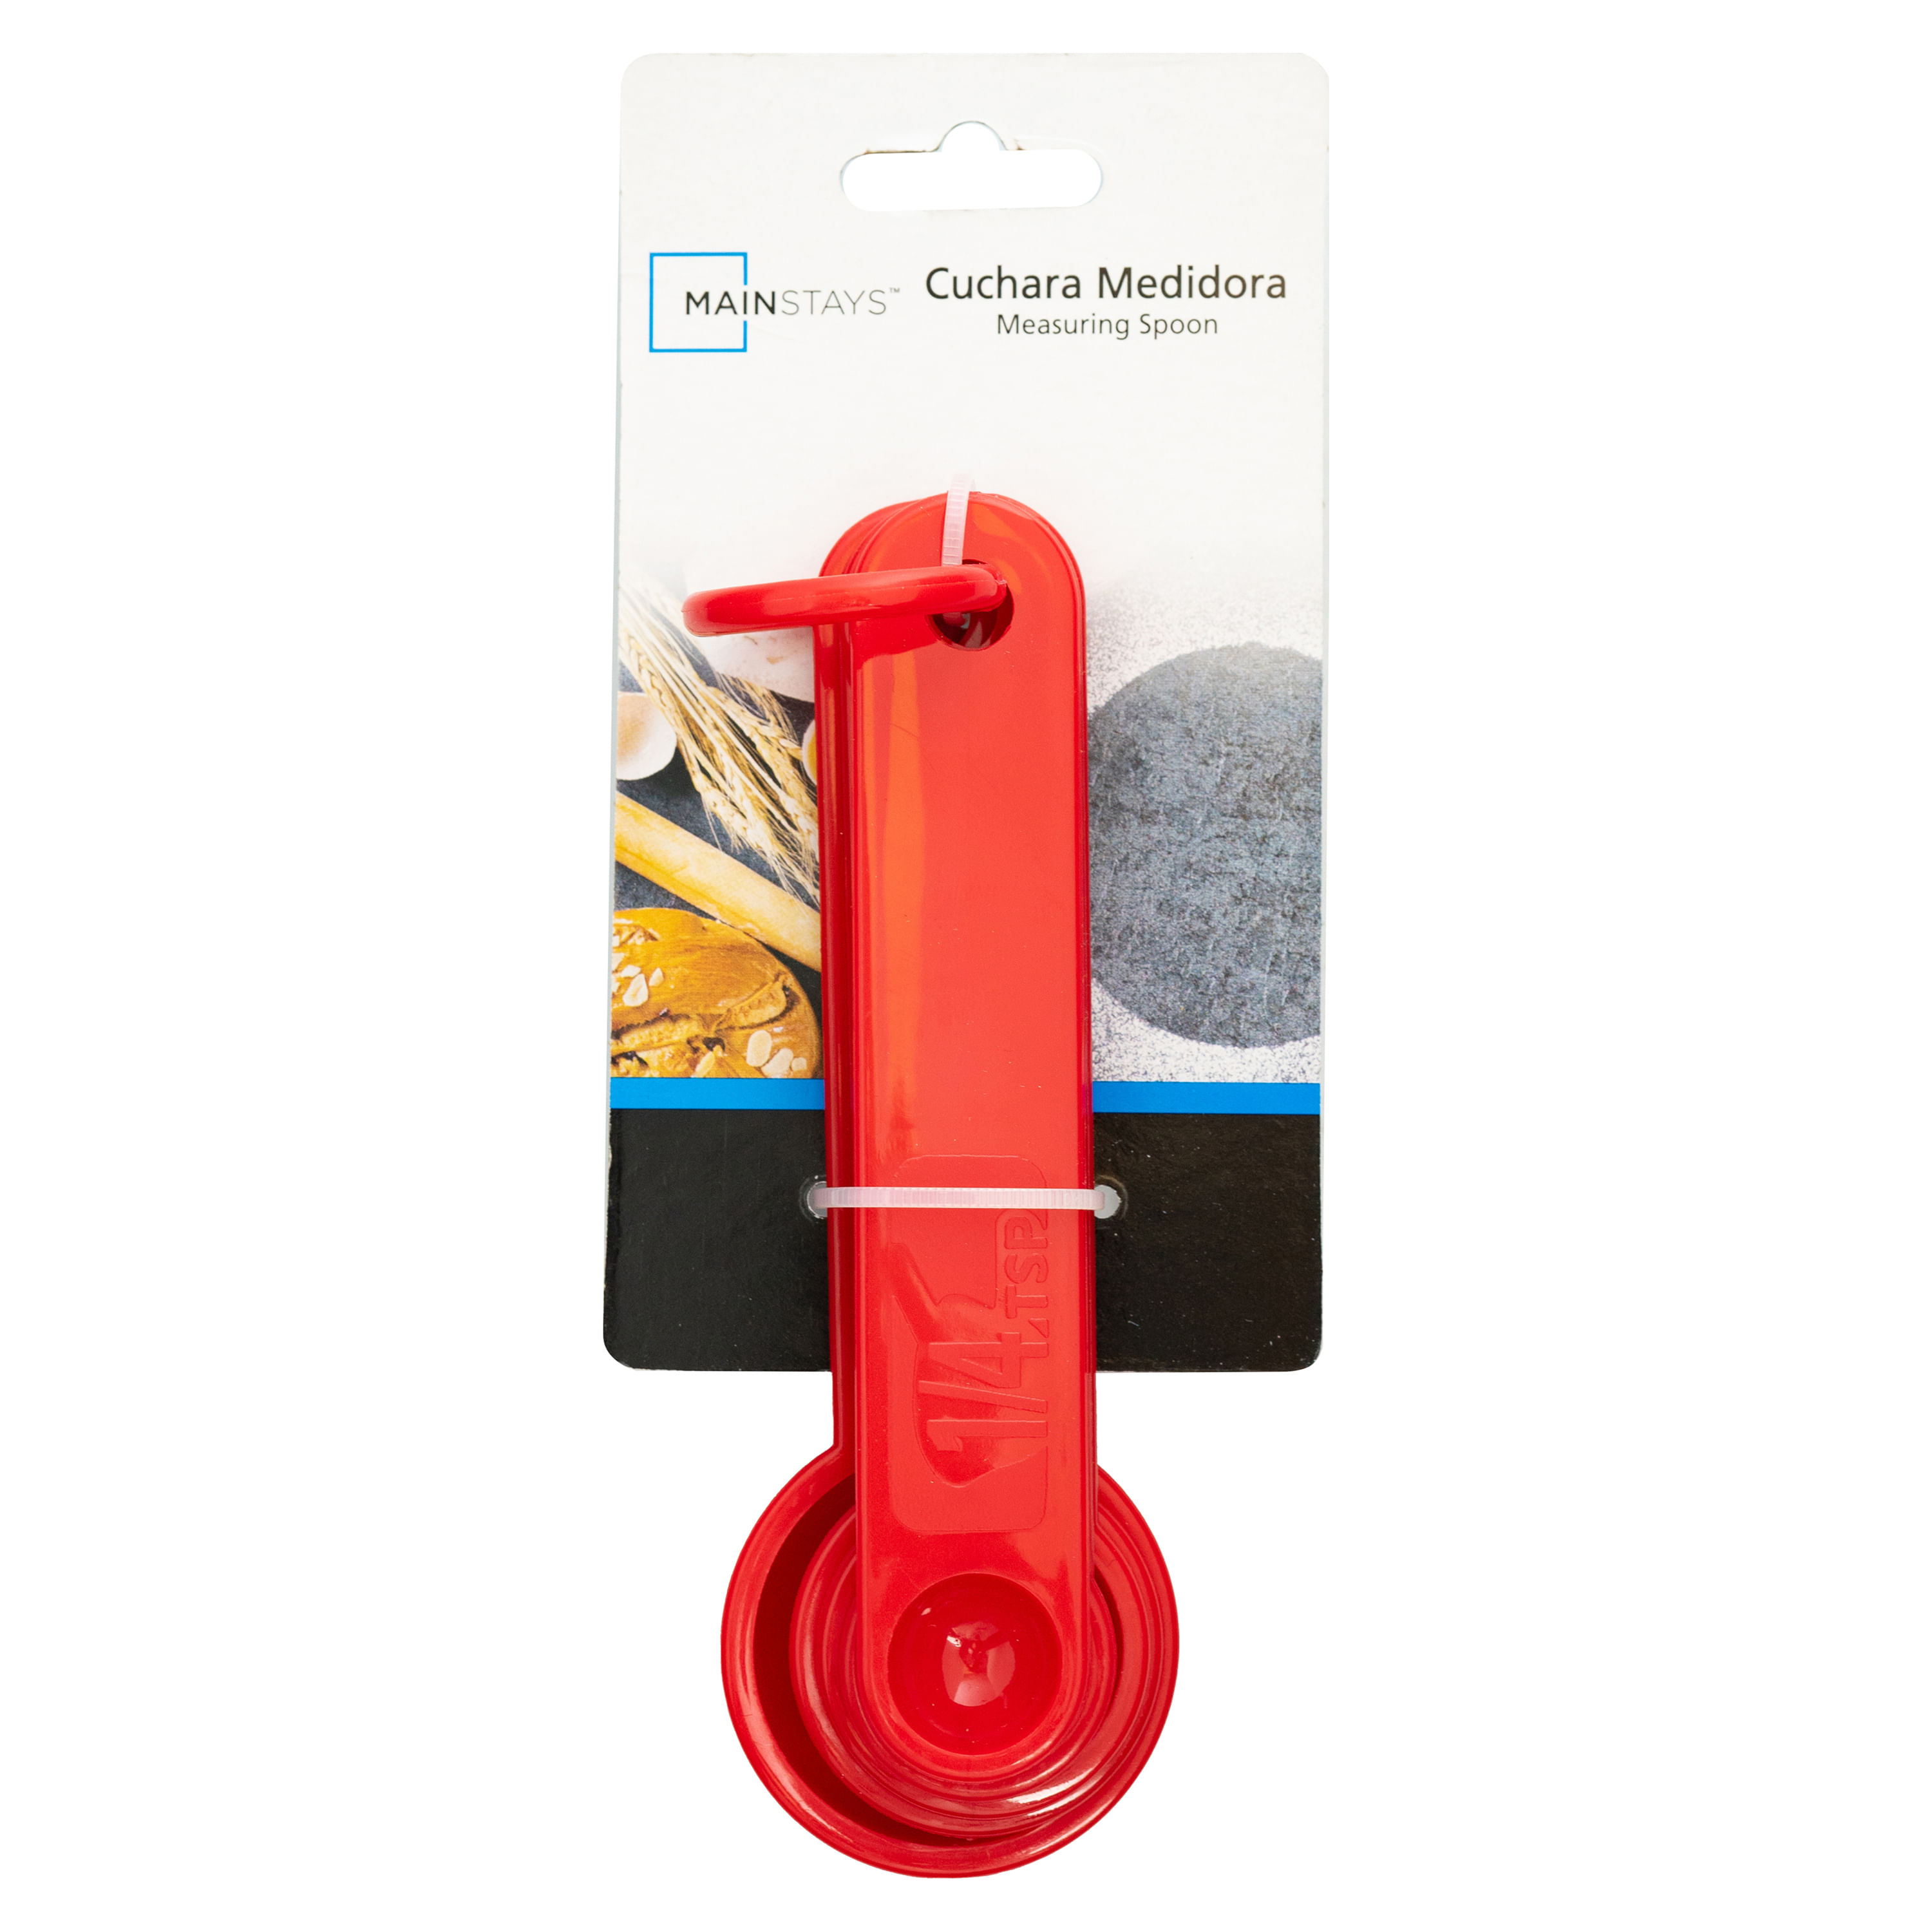 Compre el cuchara medidora de 5 gramos para obtener resultados precisos -  Alibaba.com